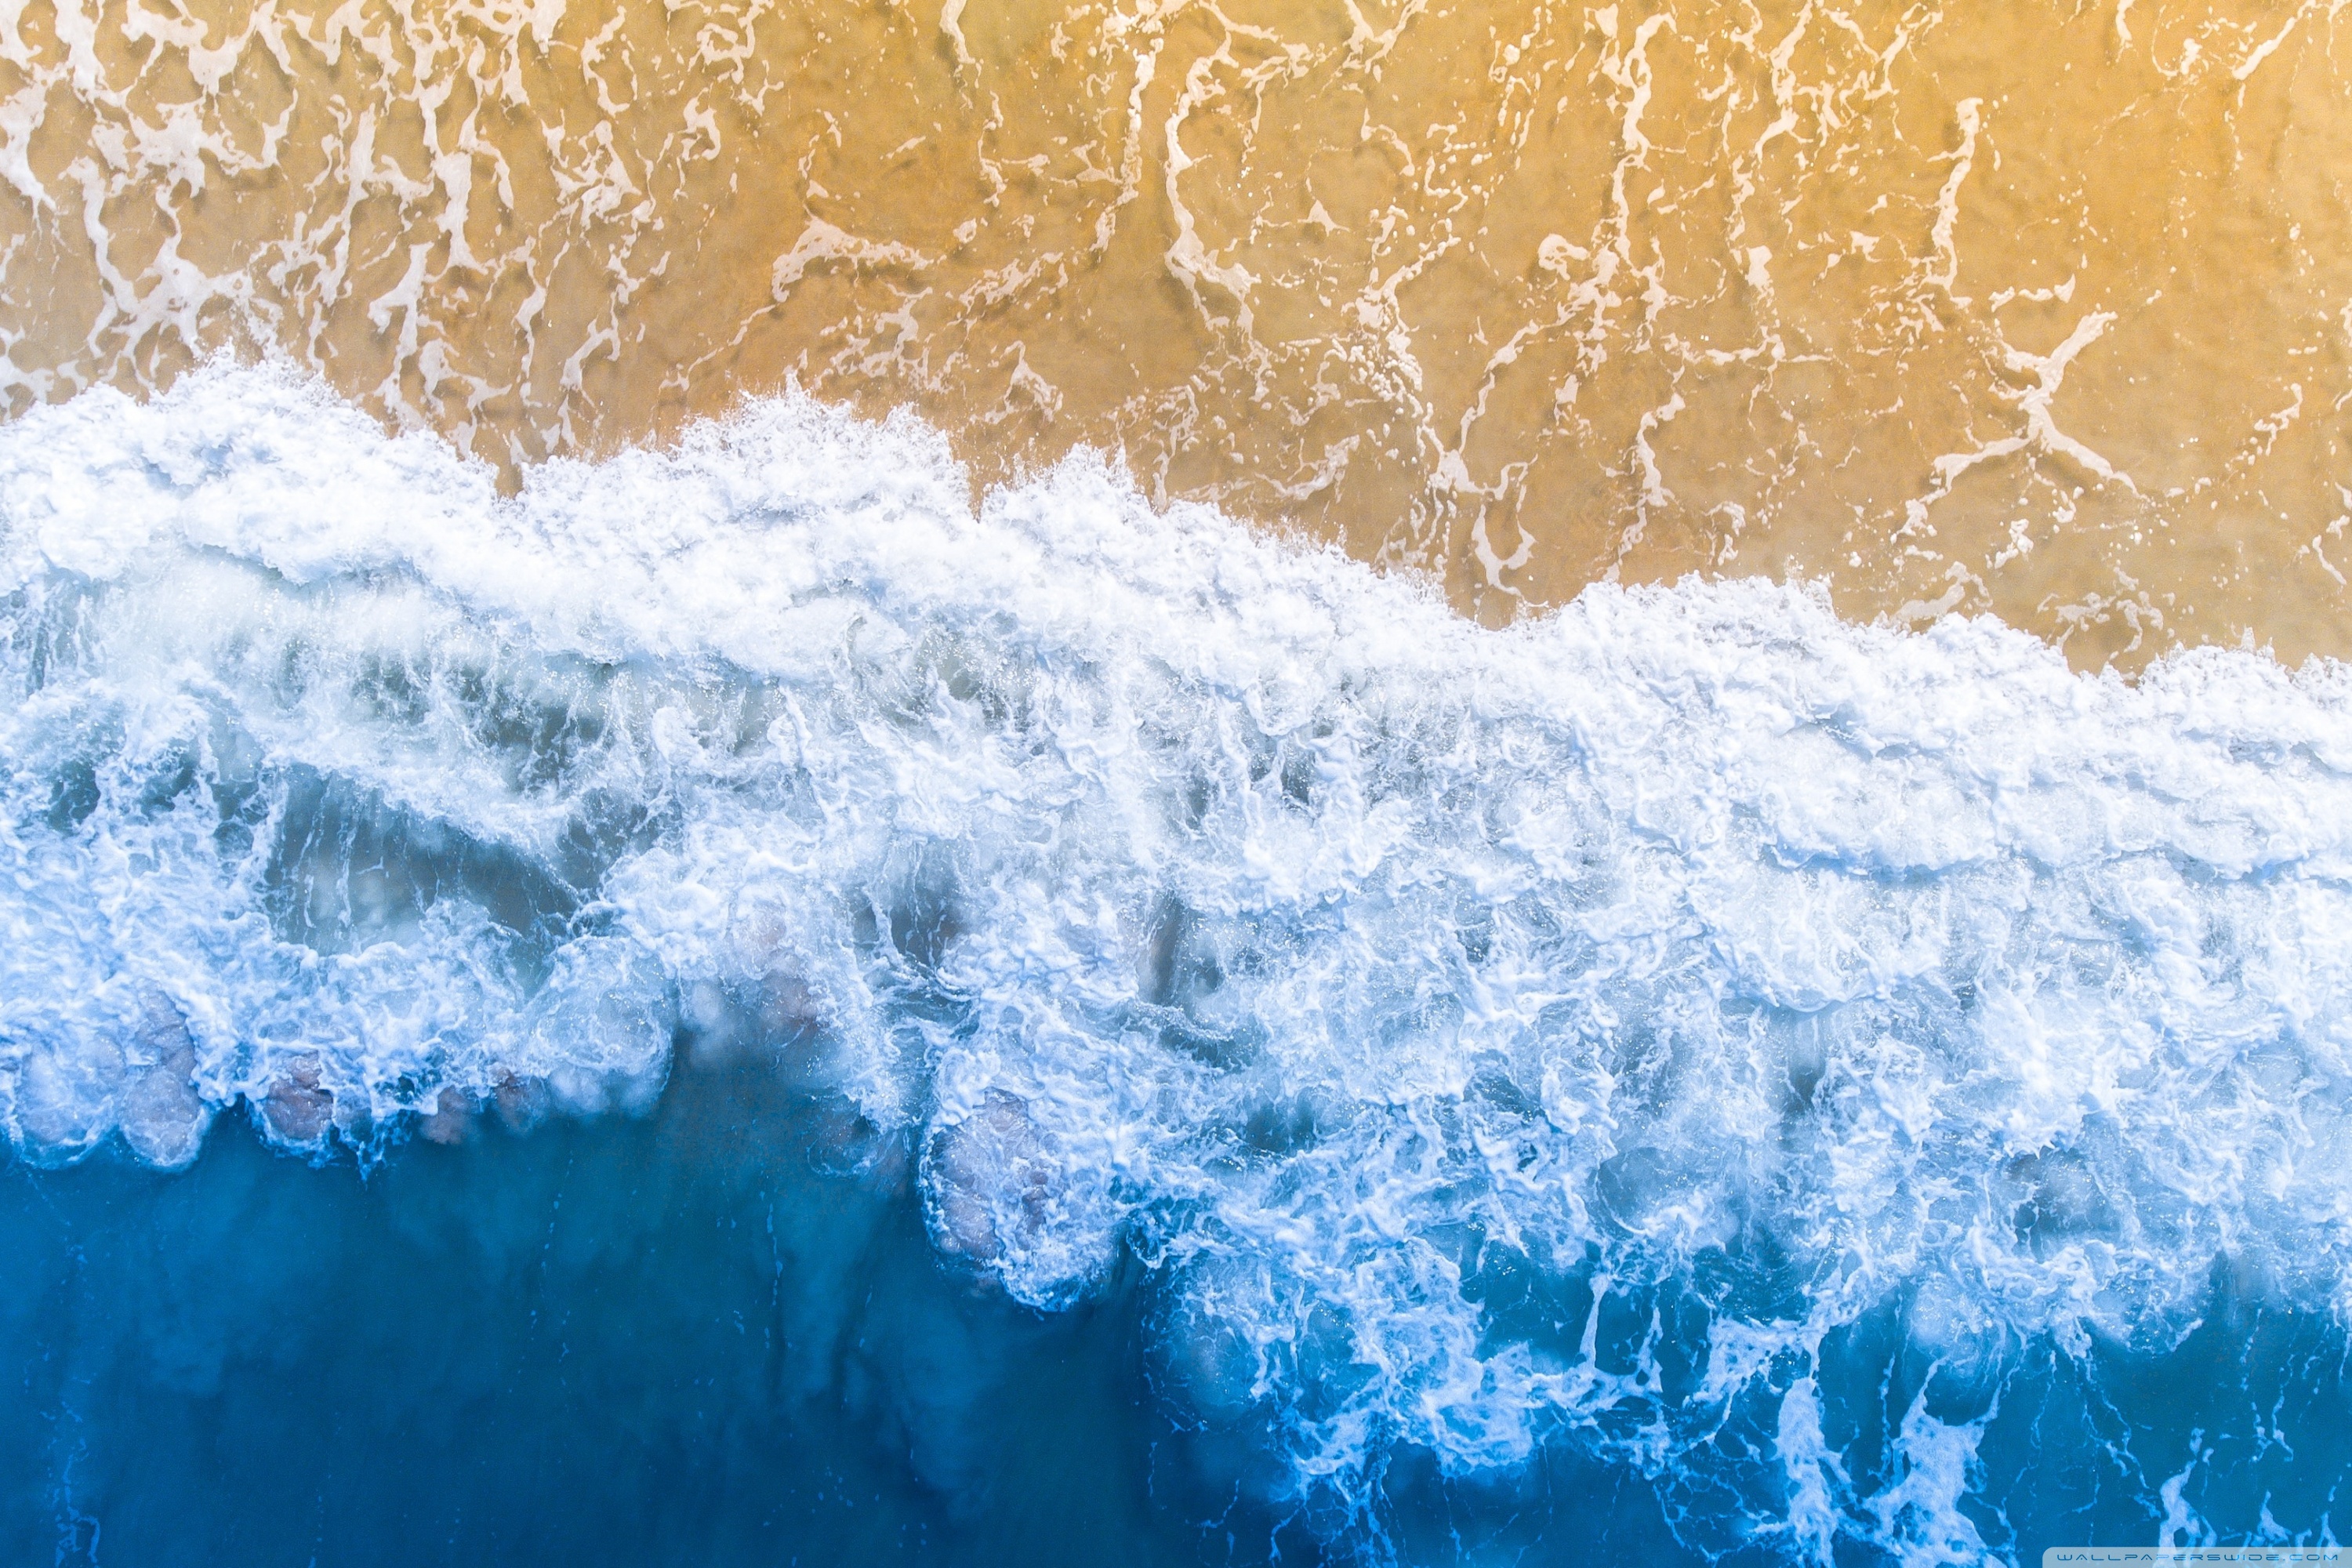 Aerial view of waves breaking on a sandy beach - Ocean